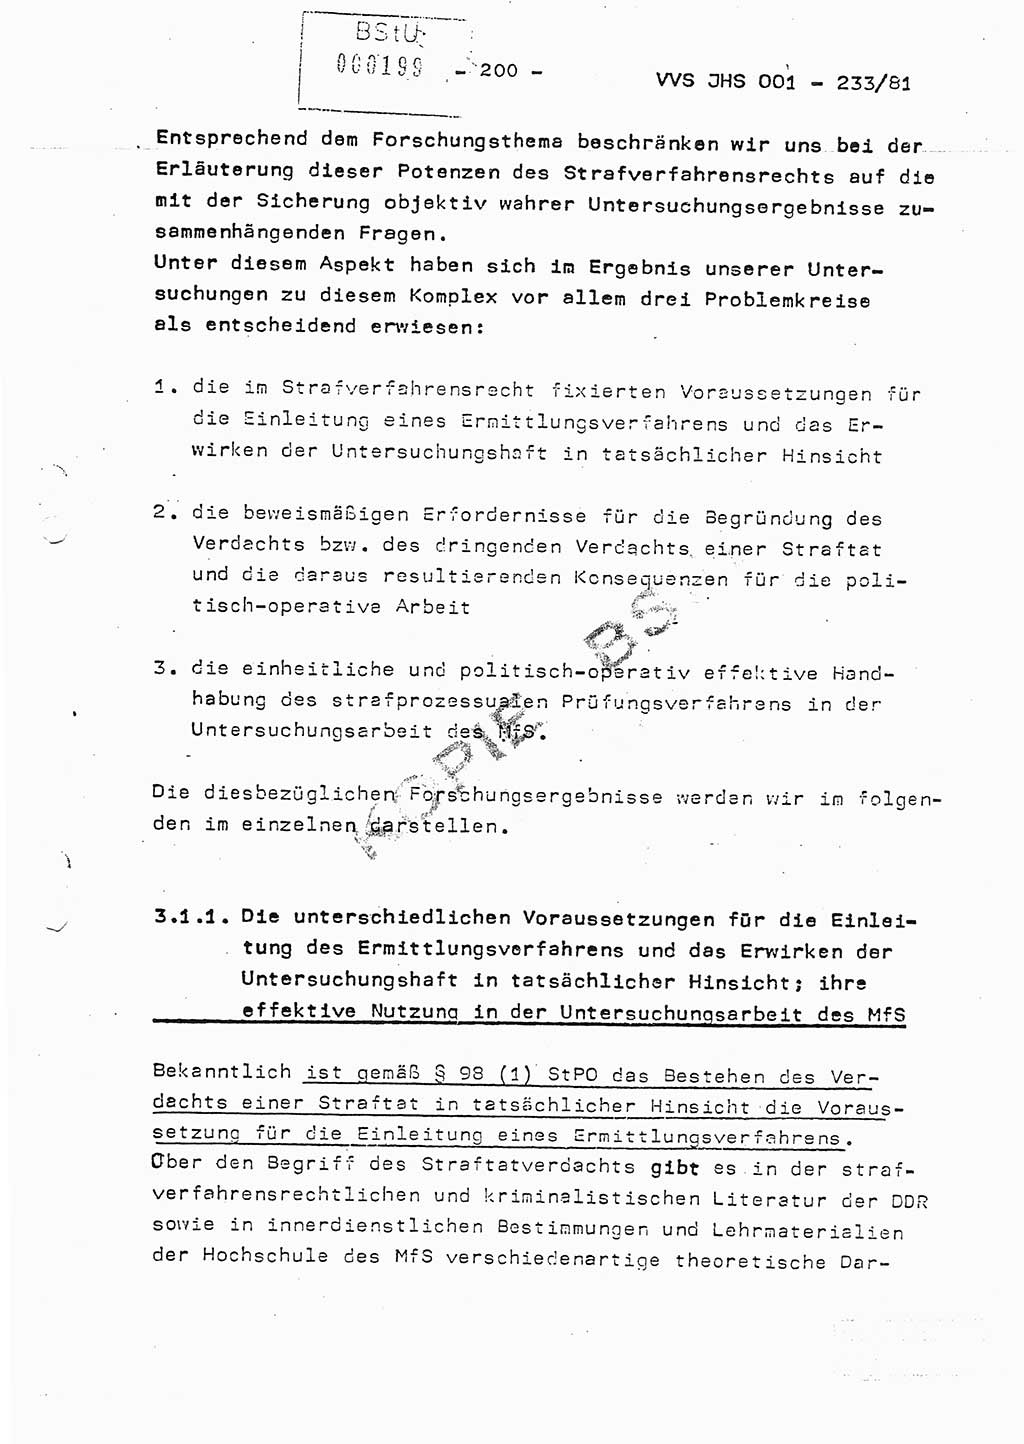 Dissertation Oberstleutnant Horst Zank (JHS), Oberstleutnant Dr. Karl-Heinz Knoblauch (JHS), Oberstleutnant Gustav-Adolf Kowalewski (HA Ⅸ), Oberstleutnant Wolfgang Plötner (HA Ⅸ), Ministerium für Staatssicherheit (MfS) [Deutsche Demokratische Republik (DDR)], Juristische Hochschule (JHS), Vertrauliche Verschlußsache (VVS) o001-233/81, Potsdam 1981, Blatt 200 (Diss. MfS DDR JHS VVS o001-233/81 1981, Bl. 200)